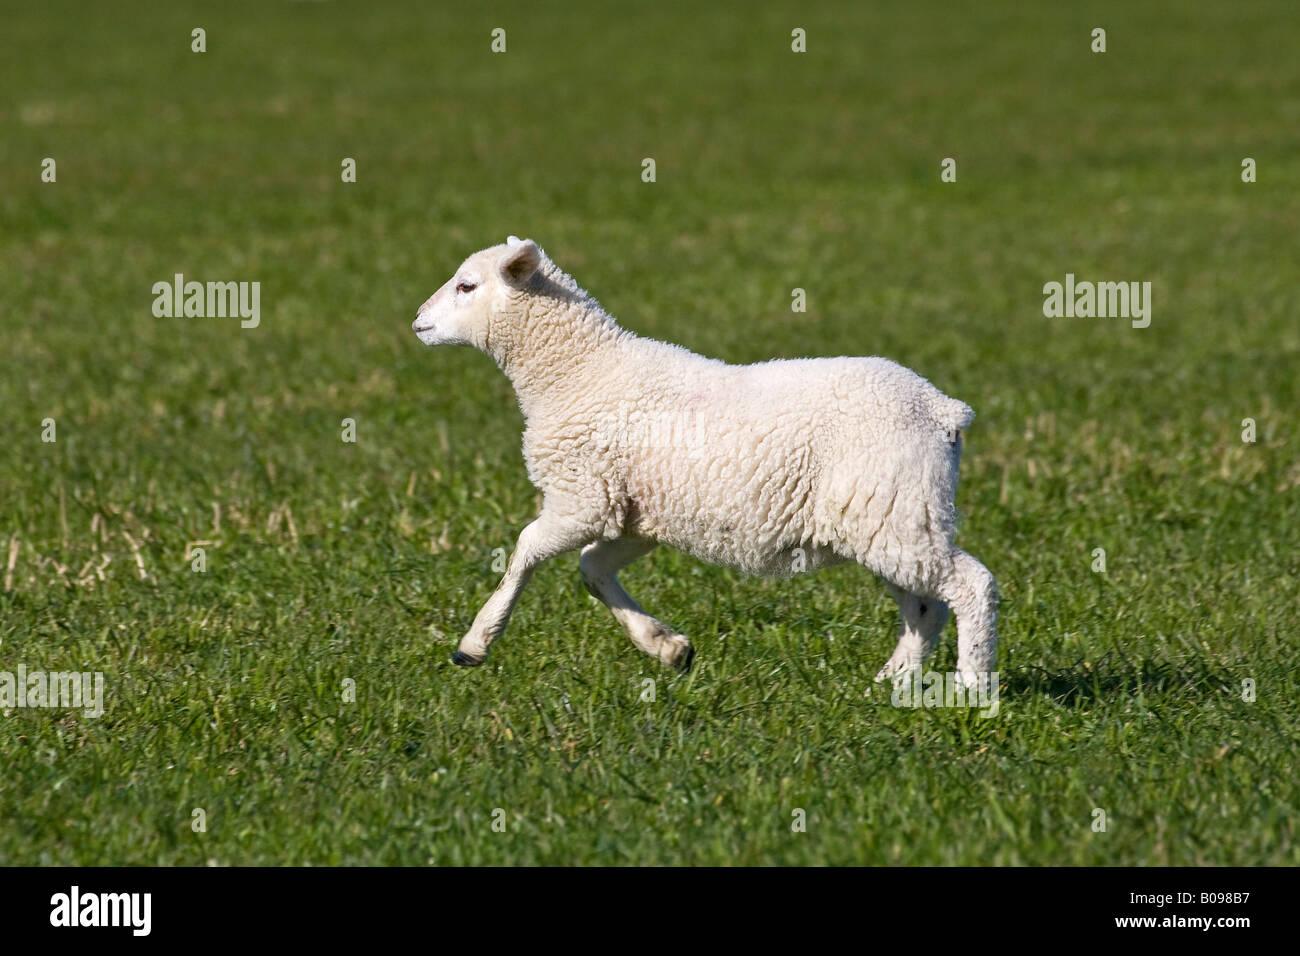 Les moutons domestiques, l'agneau de saut et d'exécution sur un champ (Ovis aries) Banque D'Images